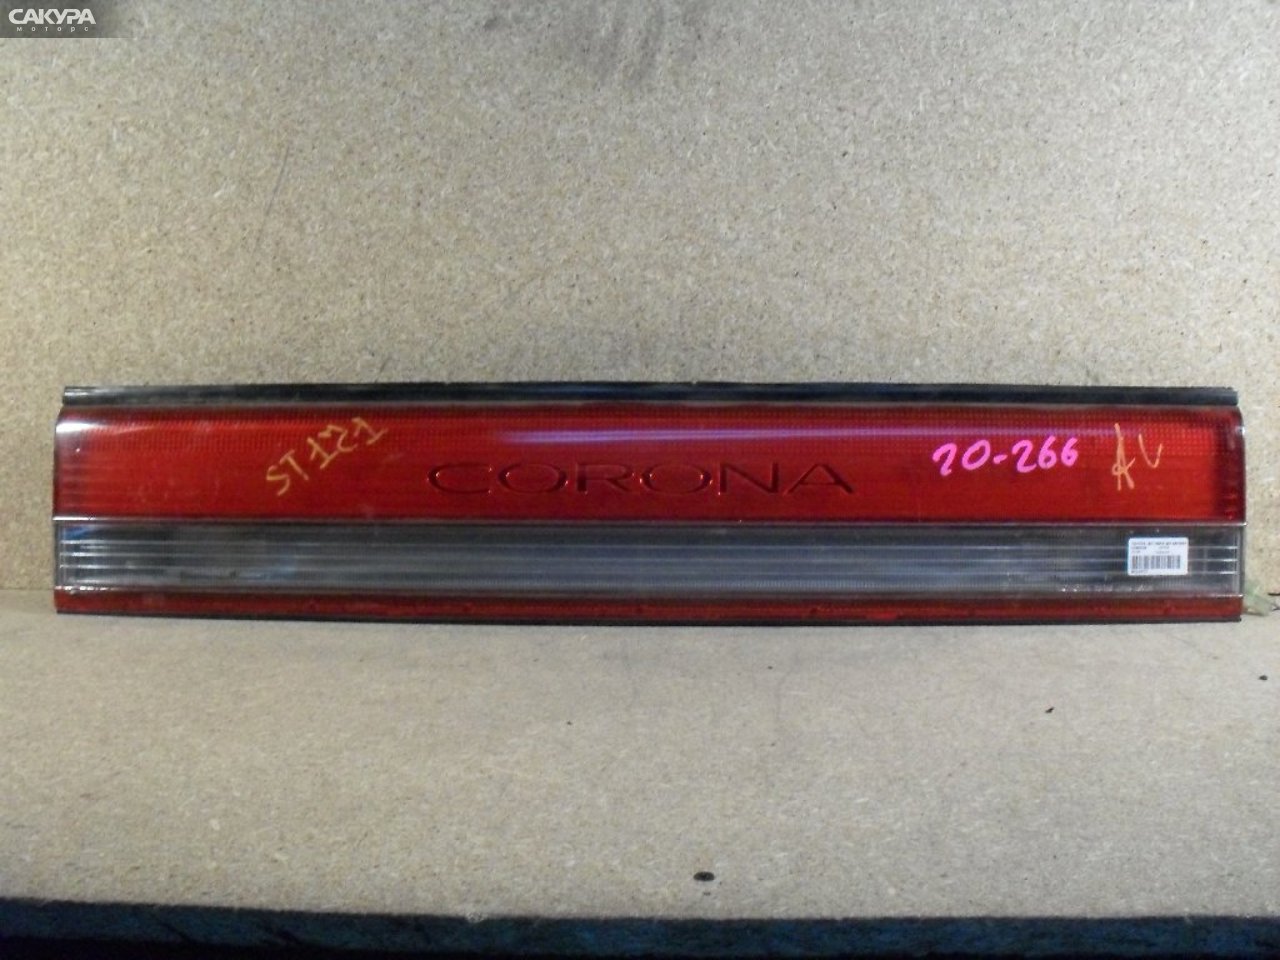 Фонарь вставка багажника Toyota Corona AT170 20-266: купить в Сакура Абакан.